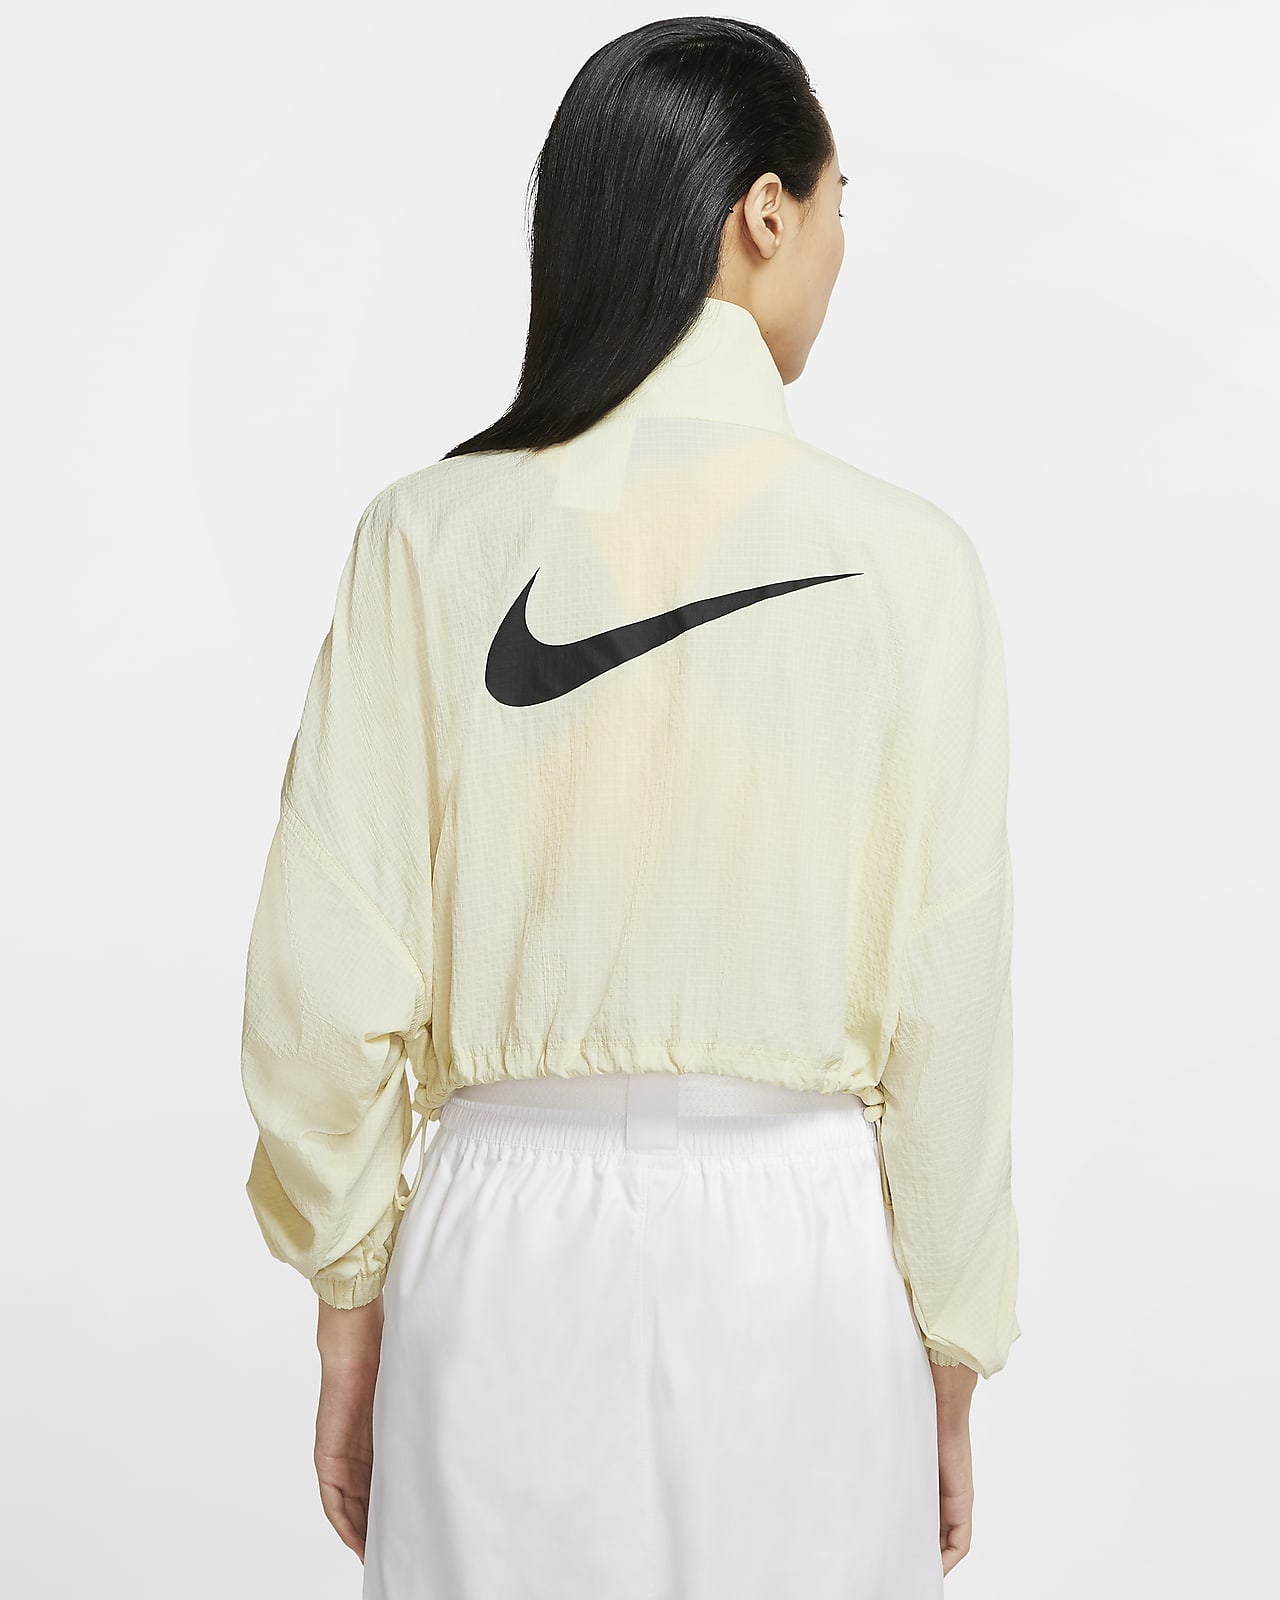 Nike Sportswear Swoosh Women's Woven Jacket. Nike JP